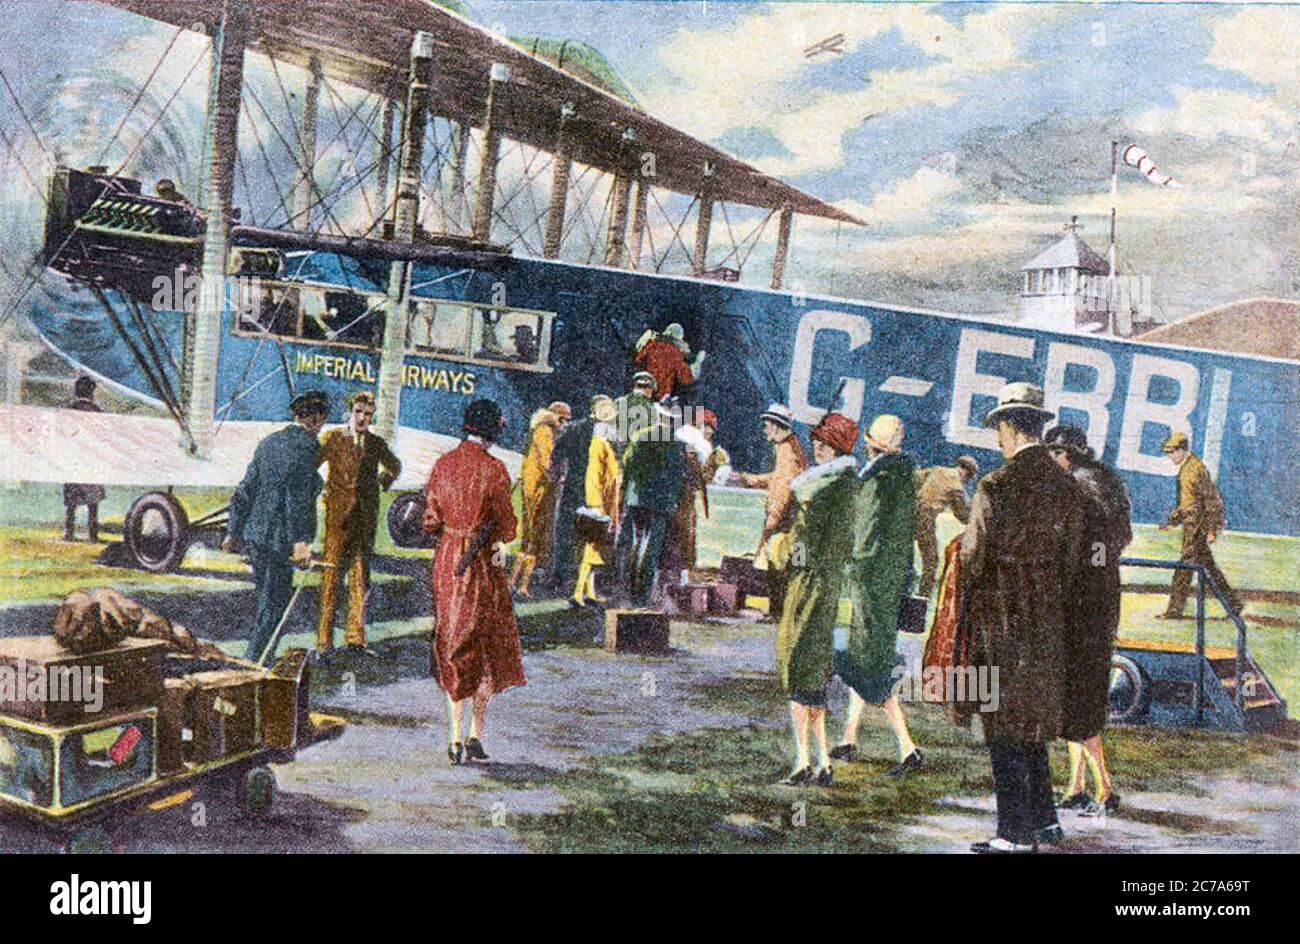 Passagers D'IMPERIAL AIRWAYS embarquant à bord d'une Handley page W.8b nommée « Prince Henry » à l'aéroport de Croydon vers 1930. Banque D'Images